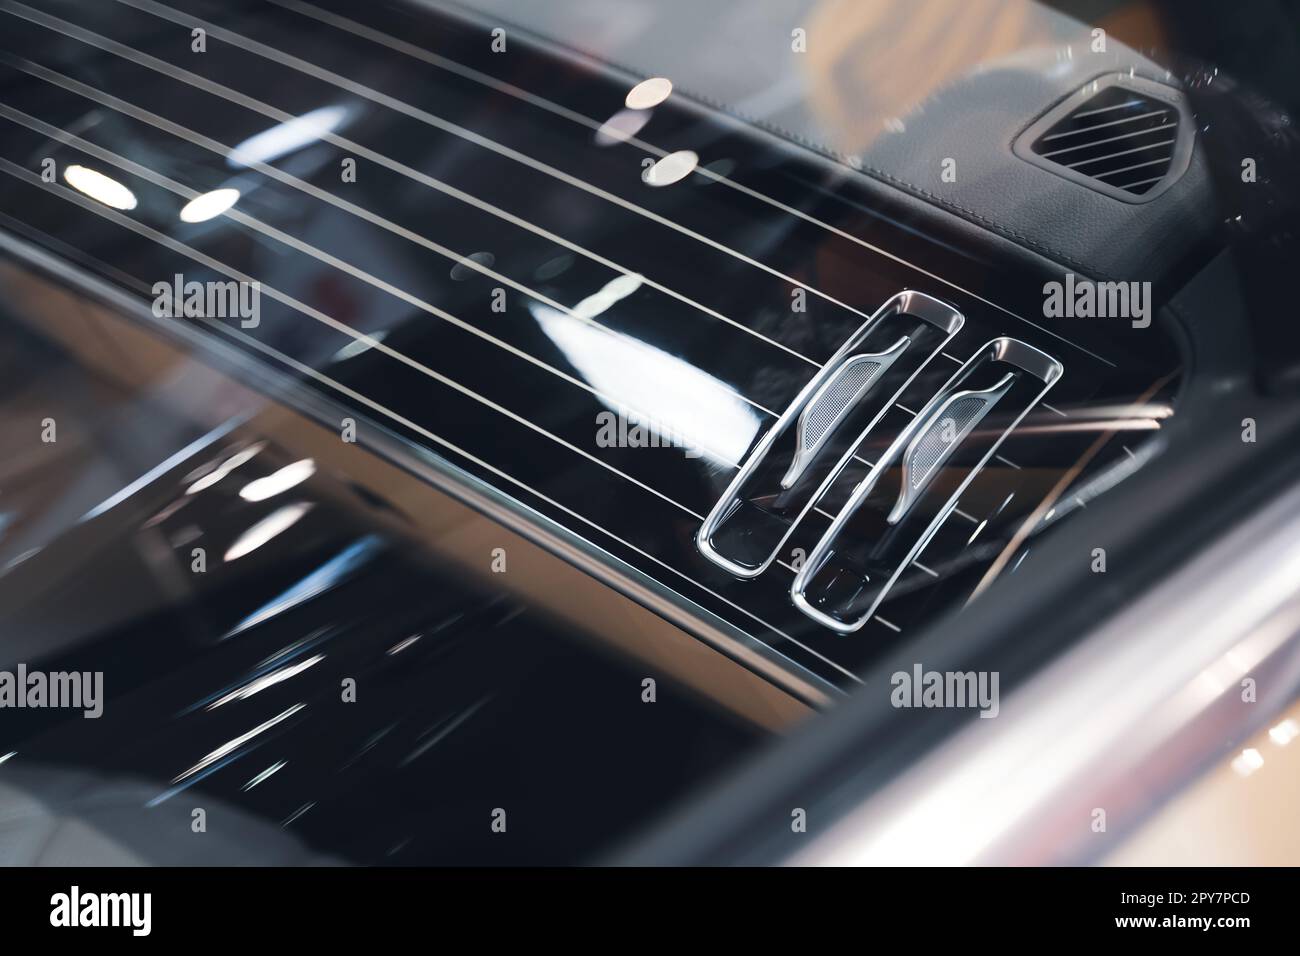 interni neri di un lussuoso impianto di climatizzazione per auto con dettagli del cruscotto in pelle Foto Stock